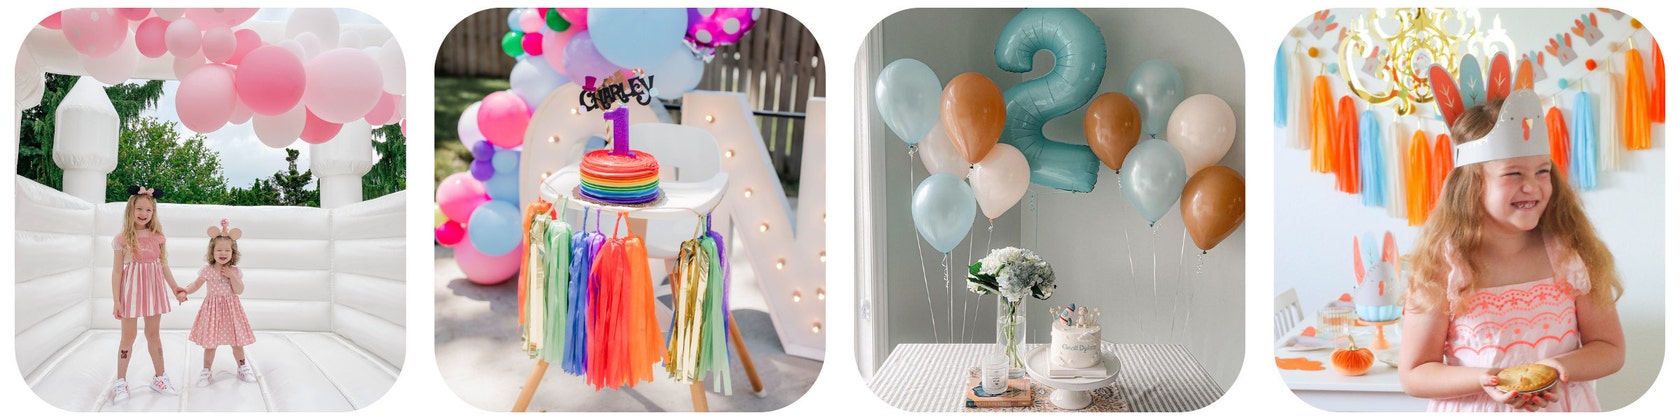 Decoraciones de unicornio para fiesta de segundo cumpleaños para niñas, kit  de suministros de fiesta de segundo cumpleaños de Hombae con guirnalda de